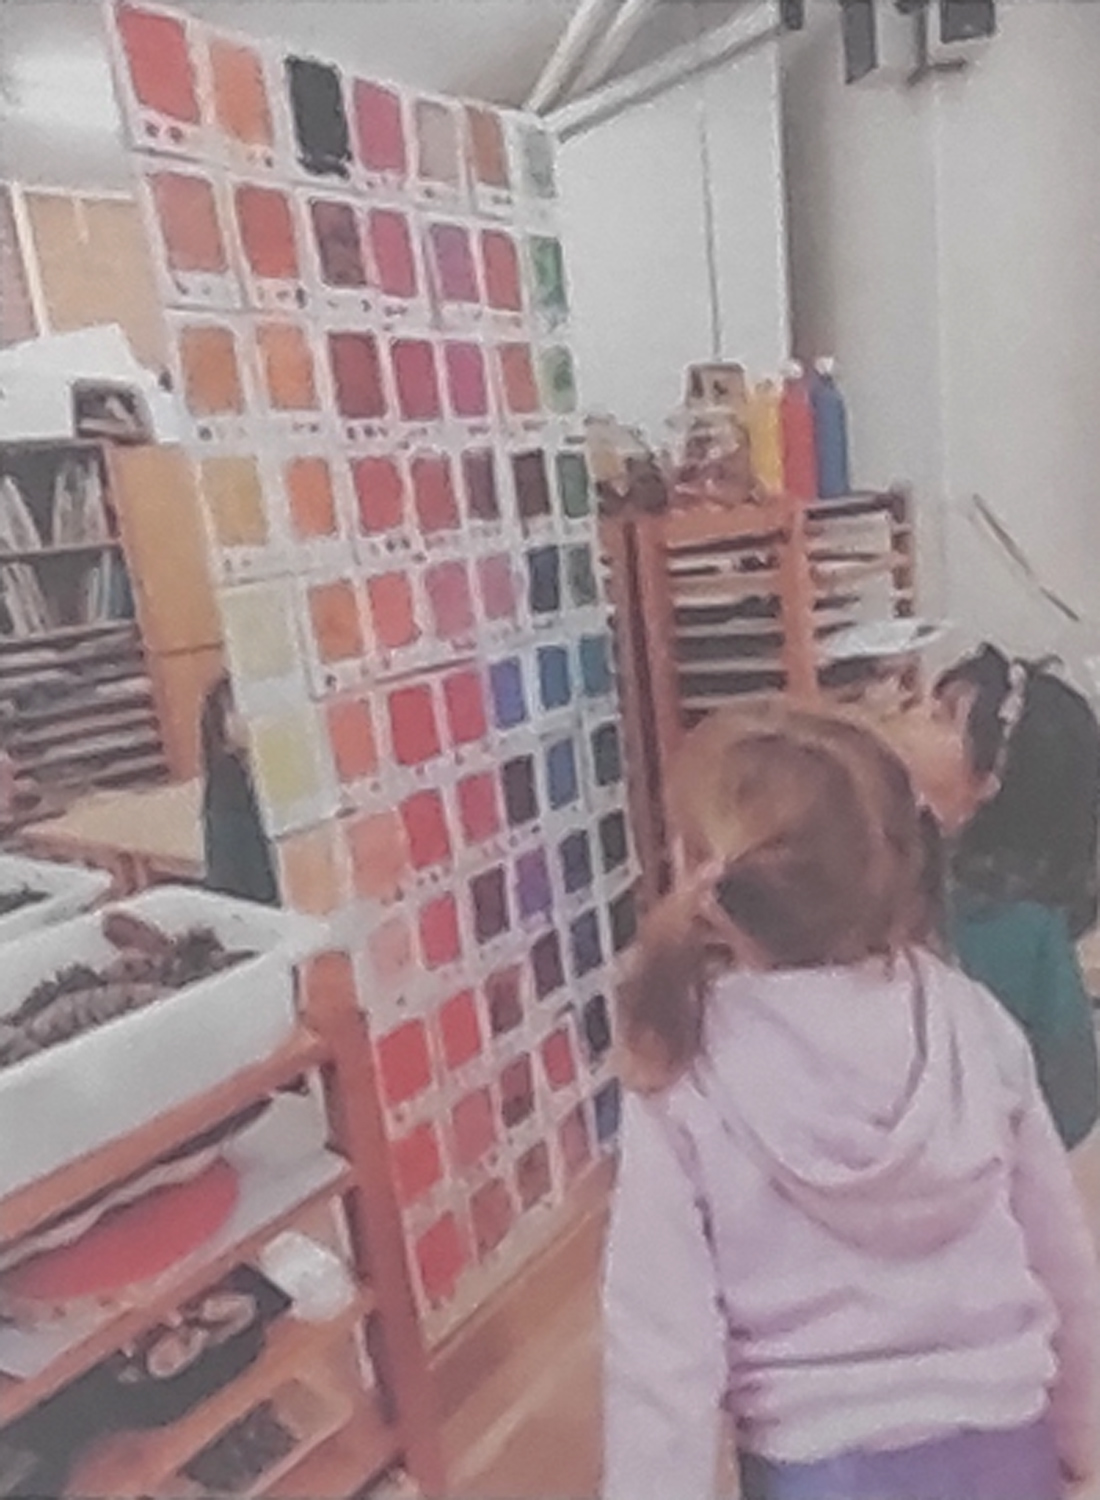 Dos niñas contemplan el pantone de colores que han creado, que se encuentra frente a ellas ordenado por tonalidades